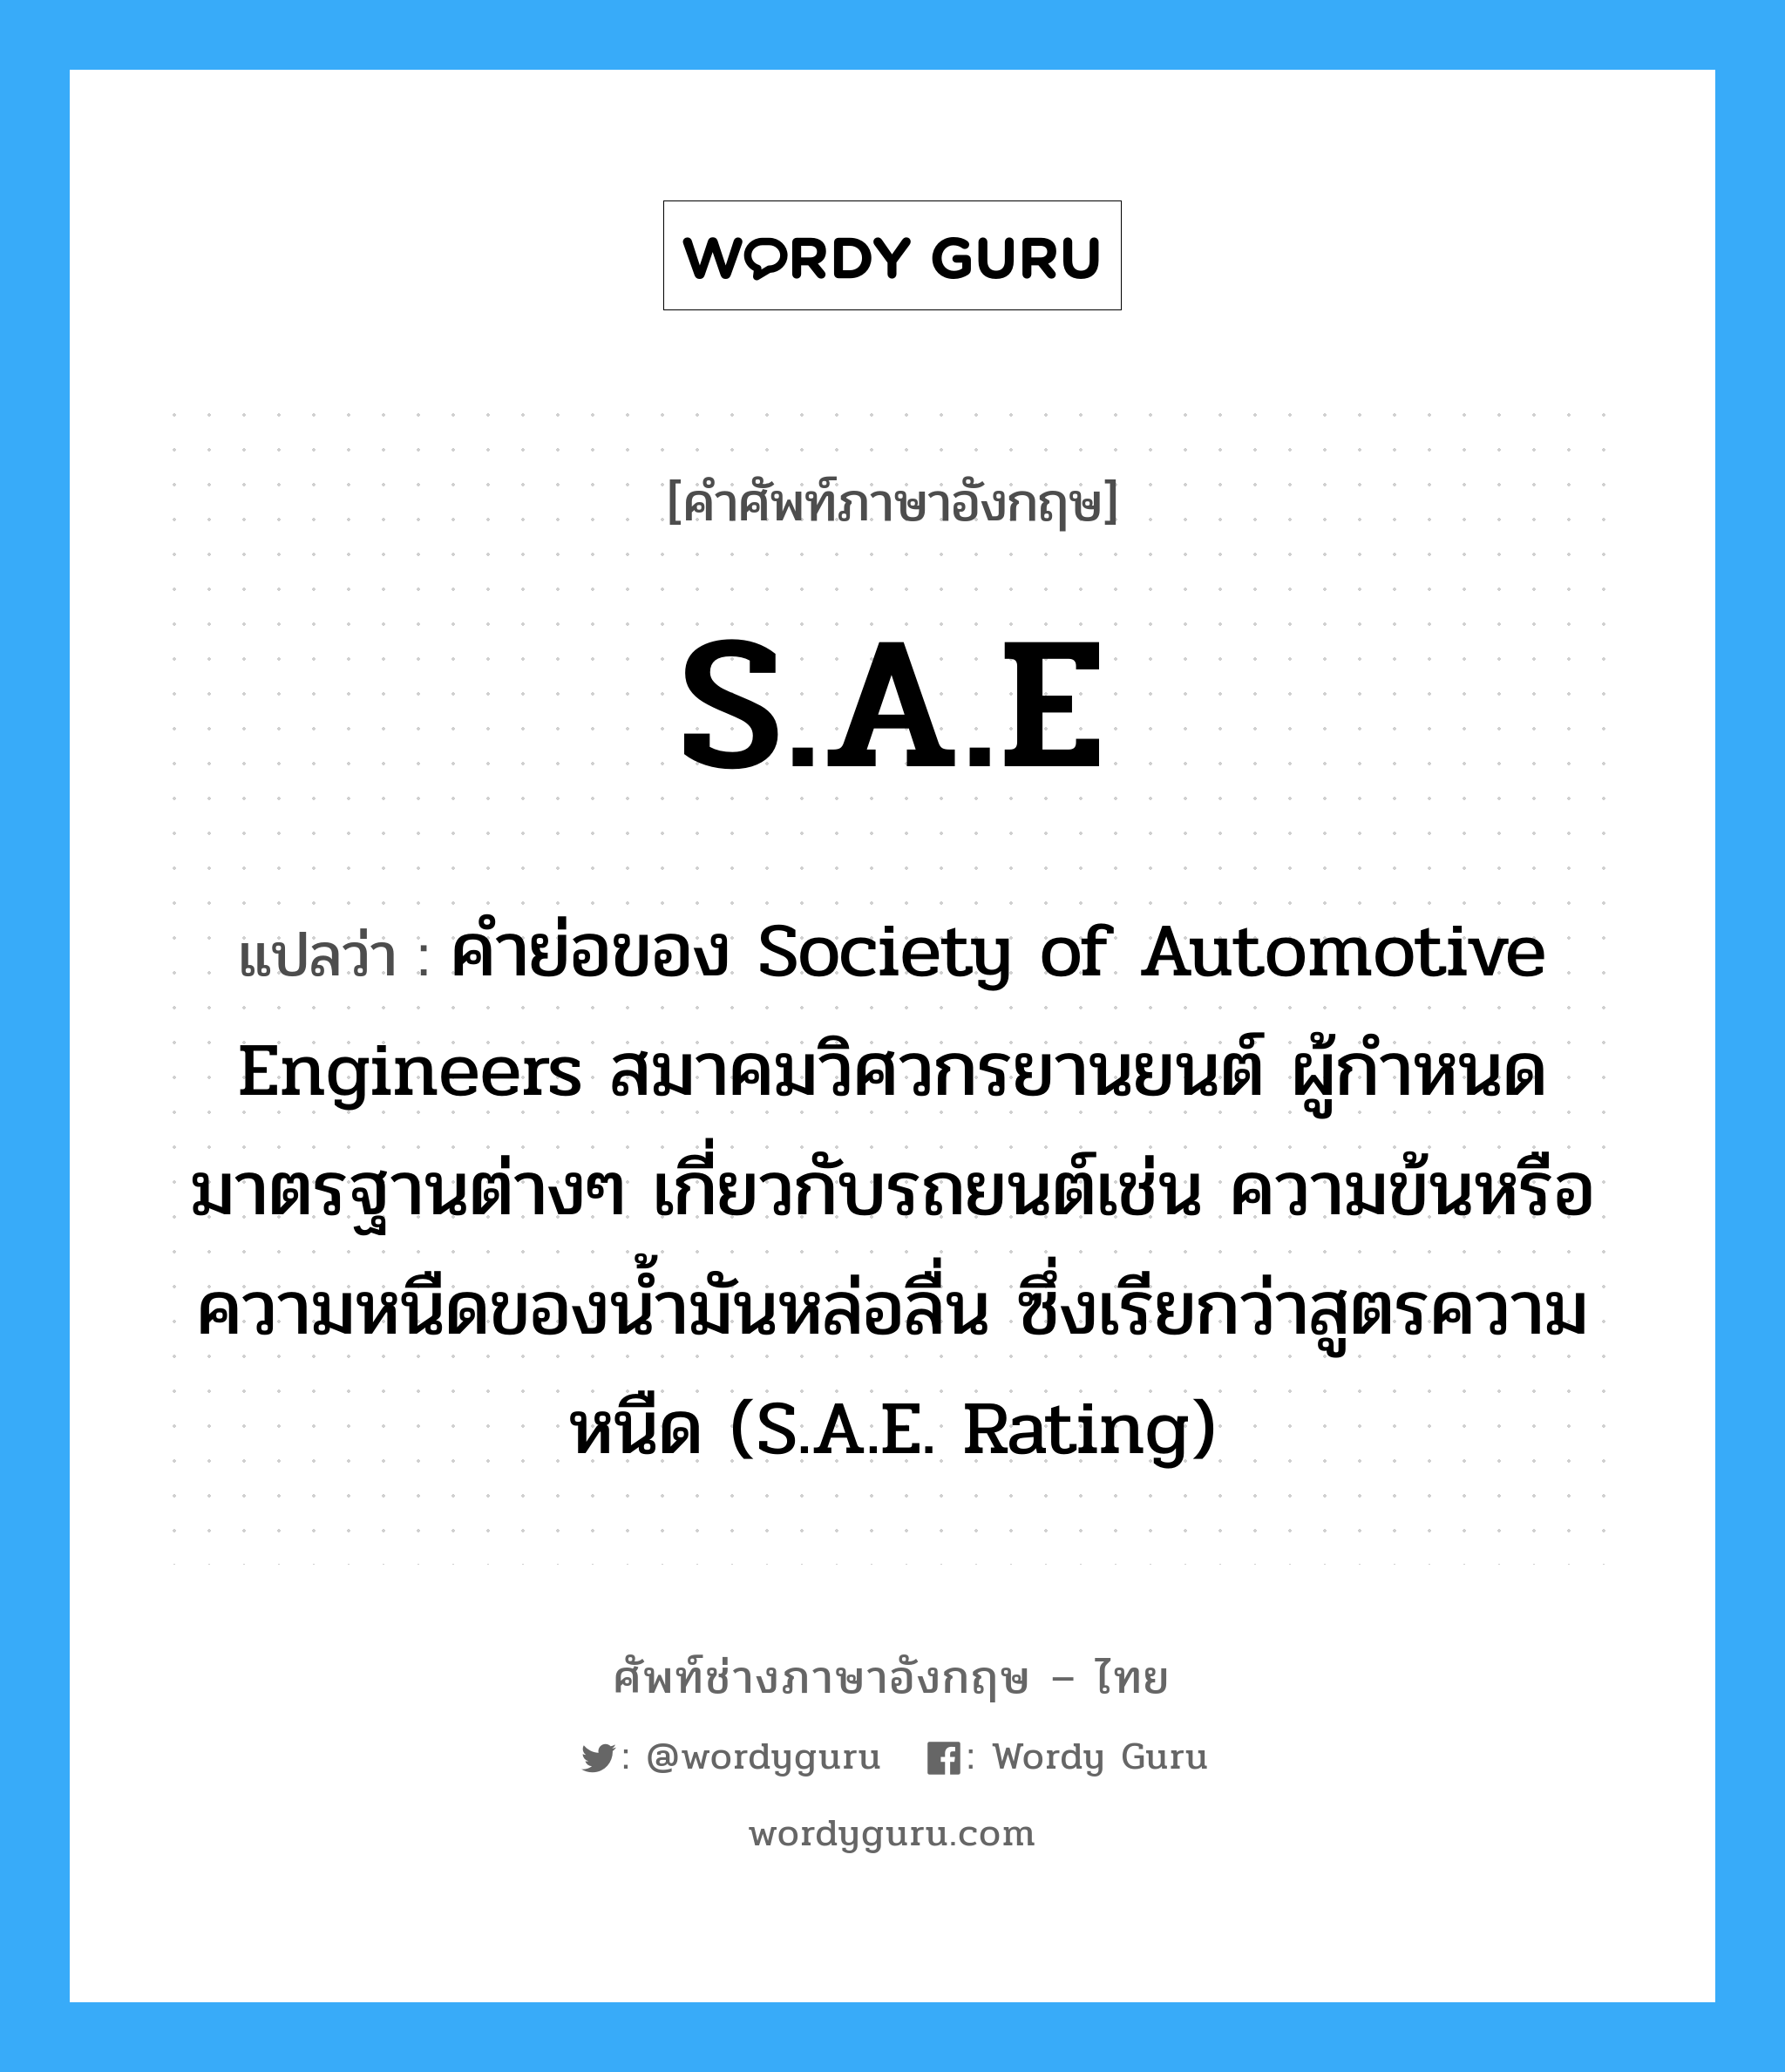 คำย่อของ Society of Automotive Engineers สมาคมวิศวกรยานยนต์ ผู้กำหนดมาตรฐานต่างๆ เกี่ยวกับรถยนต์เช่น ความข้นหรือความหนืดของน้ำมันหล่อลื่น ซึ่งเรียกว่าสูตรความหนืด (S.A.E. Rating) ภาษาอังกฤษ?, คำศัพท์ช่างภาษาอังกฤษ - ไทย คำย่อของ Society of Automotive Engineers สมาคมวิศวกรยานยนต์ ผู้กำหนดมาตรฐานต่างๆ เกี่ยวกับรถยนต์เช่น ความข้นหรือความหนืดของน้ำมันหล่อลื่น ซึ่งเรียกว่าสูตรความหนืด (S.A.E. Rating) คำศัพท์ภาษาอังกฤษ คำย่อของ Society of Automotive Engineers สมาคมวิศวกรยานยนต์ ผู้กำหนดมาตรฐานต่างๆ เกี่ยวกับรถยนต์เช่น ความข้นหรือความหนืดของน้ำมันหล่อลื่น ซึ่งเรียกว่าสูตรความหนืด (S.A.E. Rating) แปลว่า S.A.E